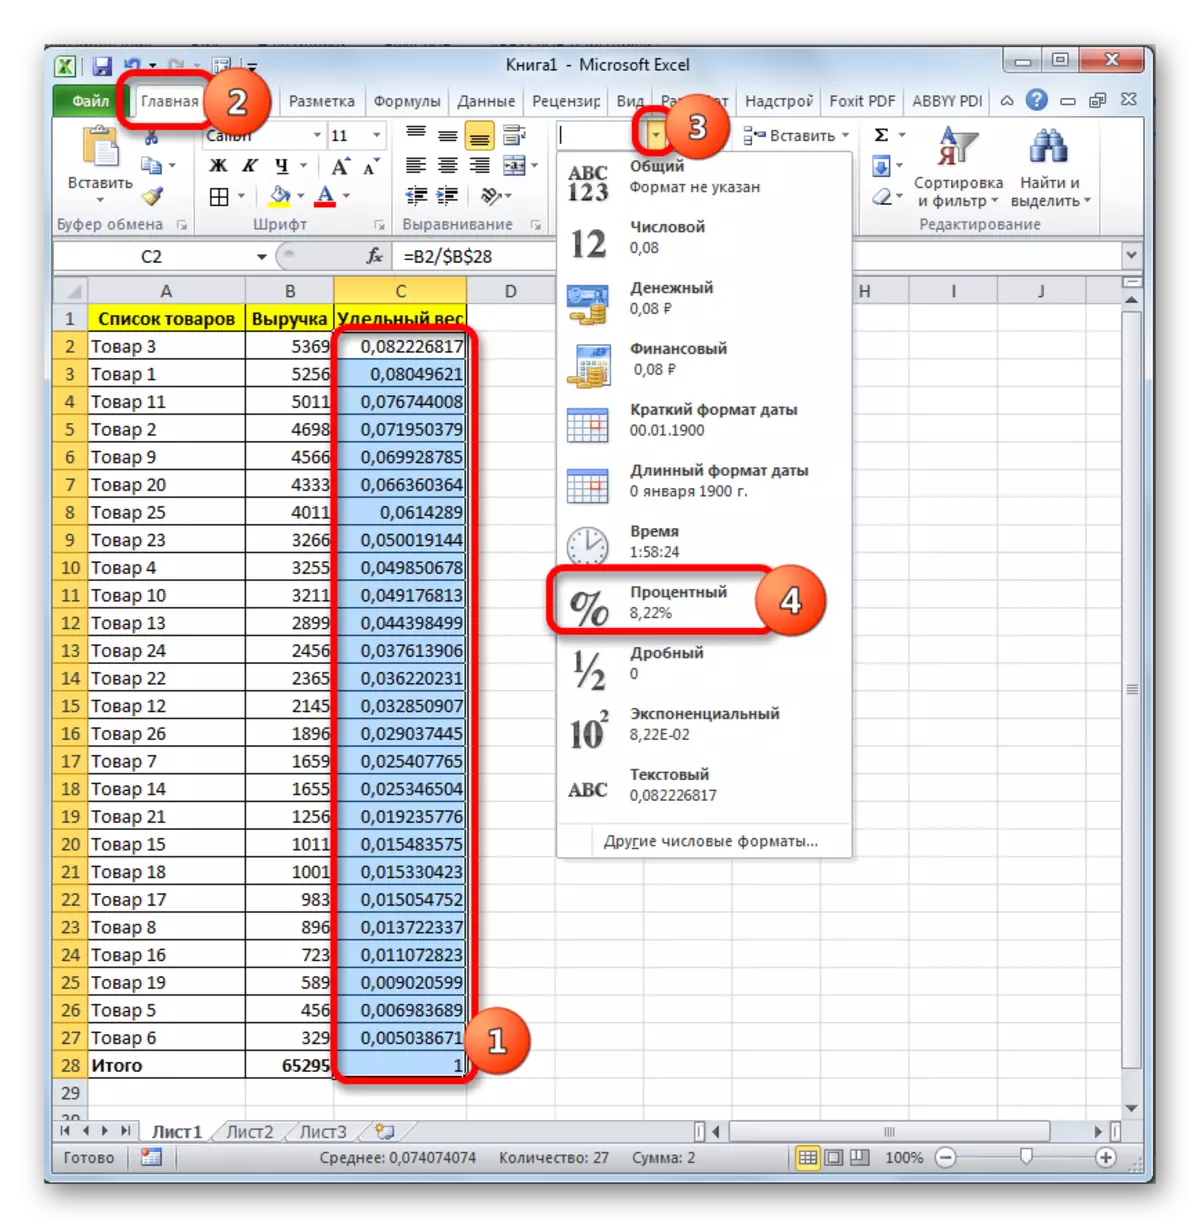 Ukufaka ifomethi yedatha ecacile ku-Microsoft Excel